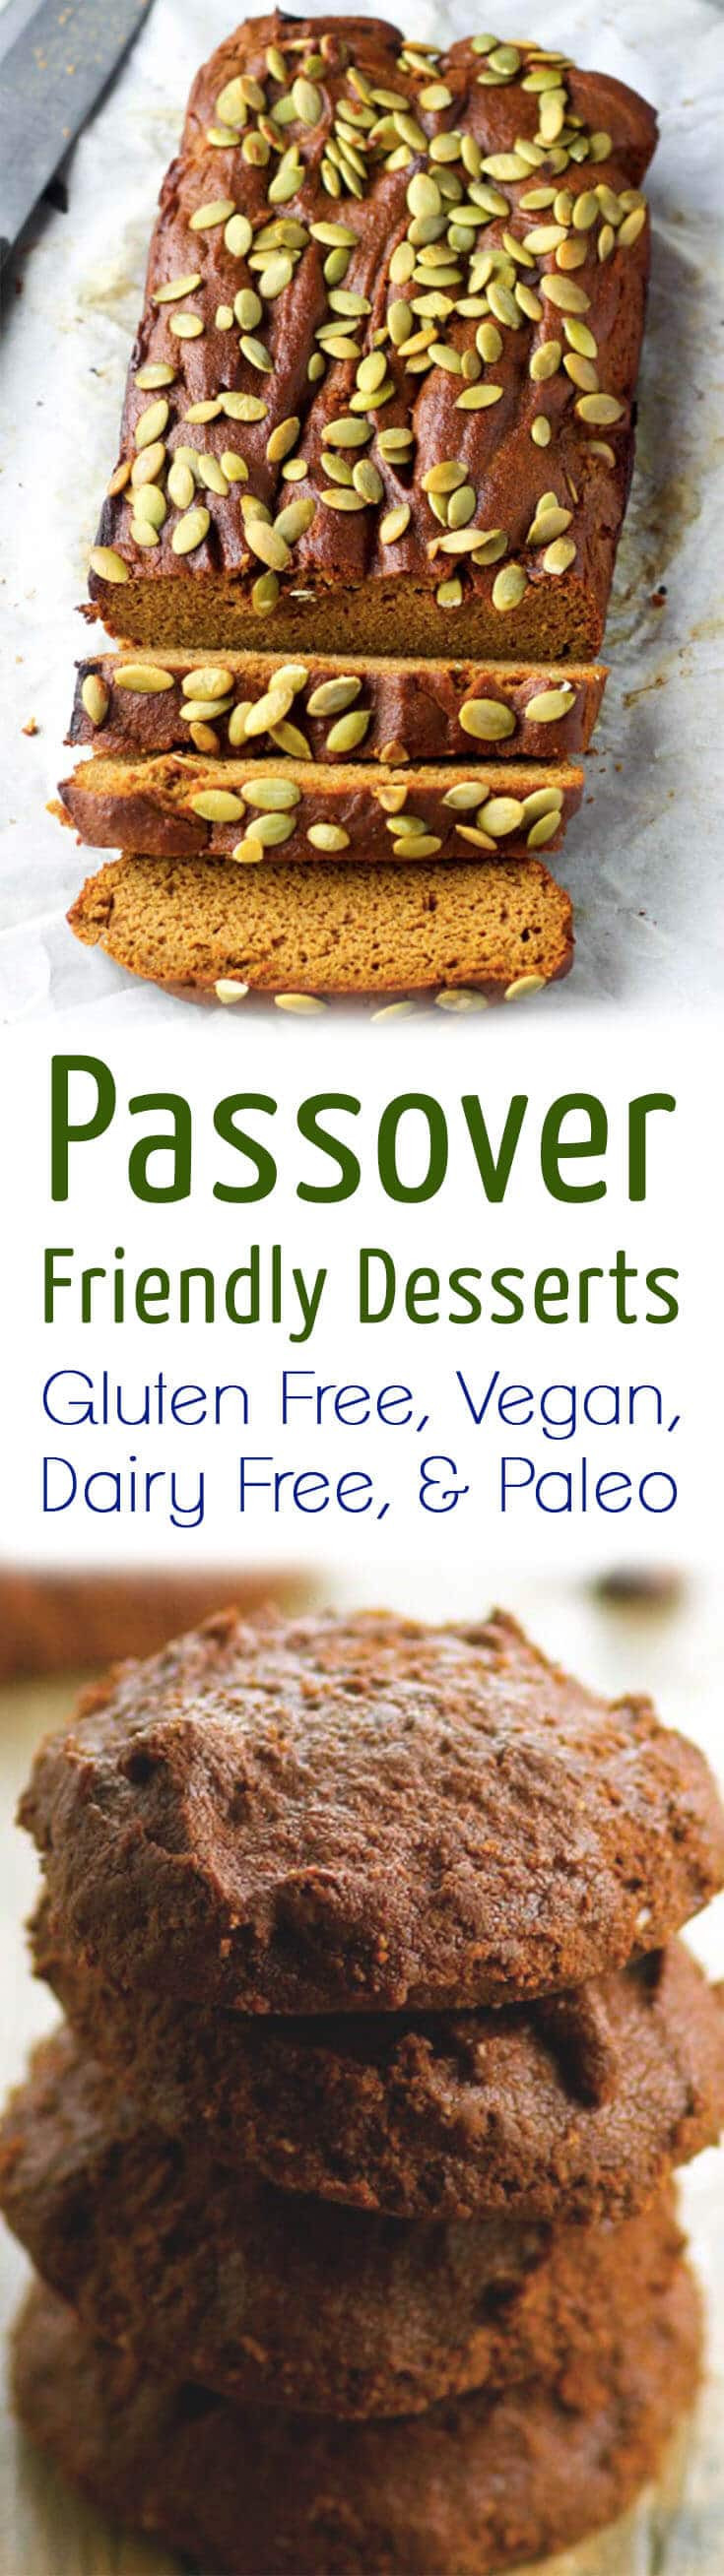 Gluten Free Passover Desserts
 30 Passover Friendly Desserts